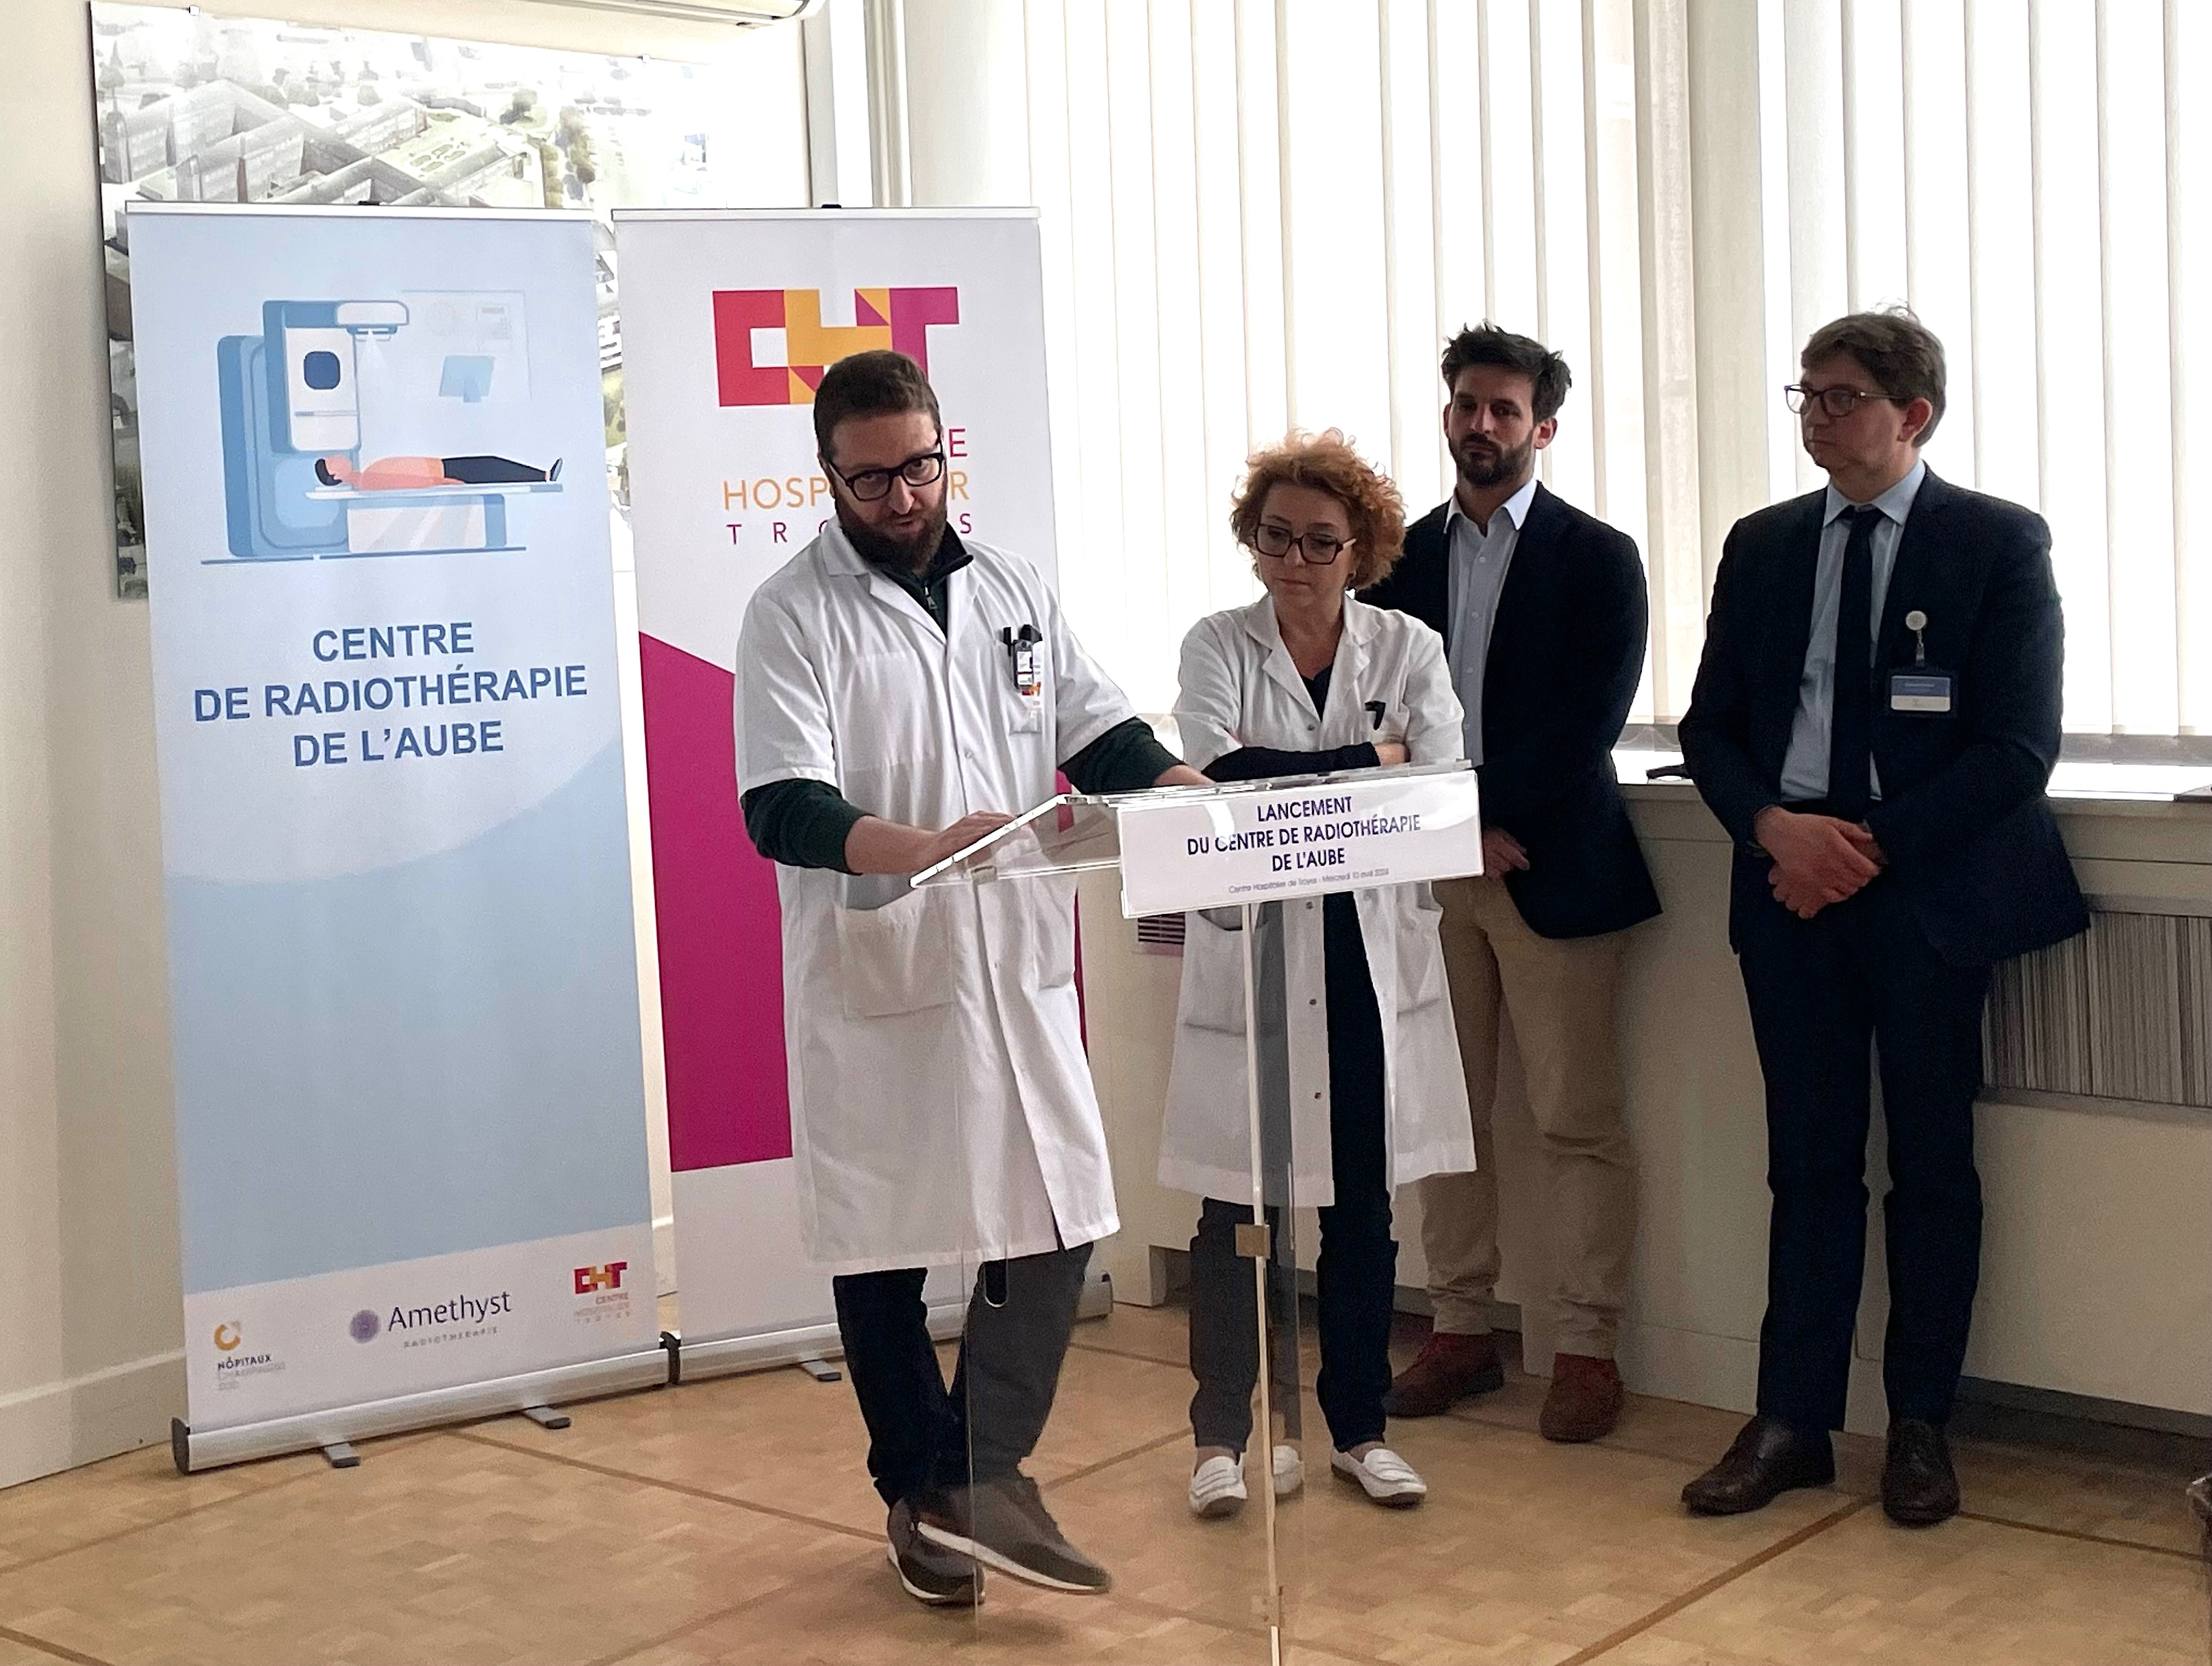 Le centre hospitalier de Troyes, en partenariat avec le groupe Améthyst, lance des travaux pour moderniser le service et accueillir davantage de patients. LP/Stéphane Magnoux